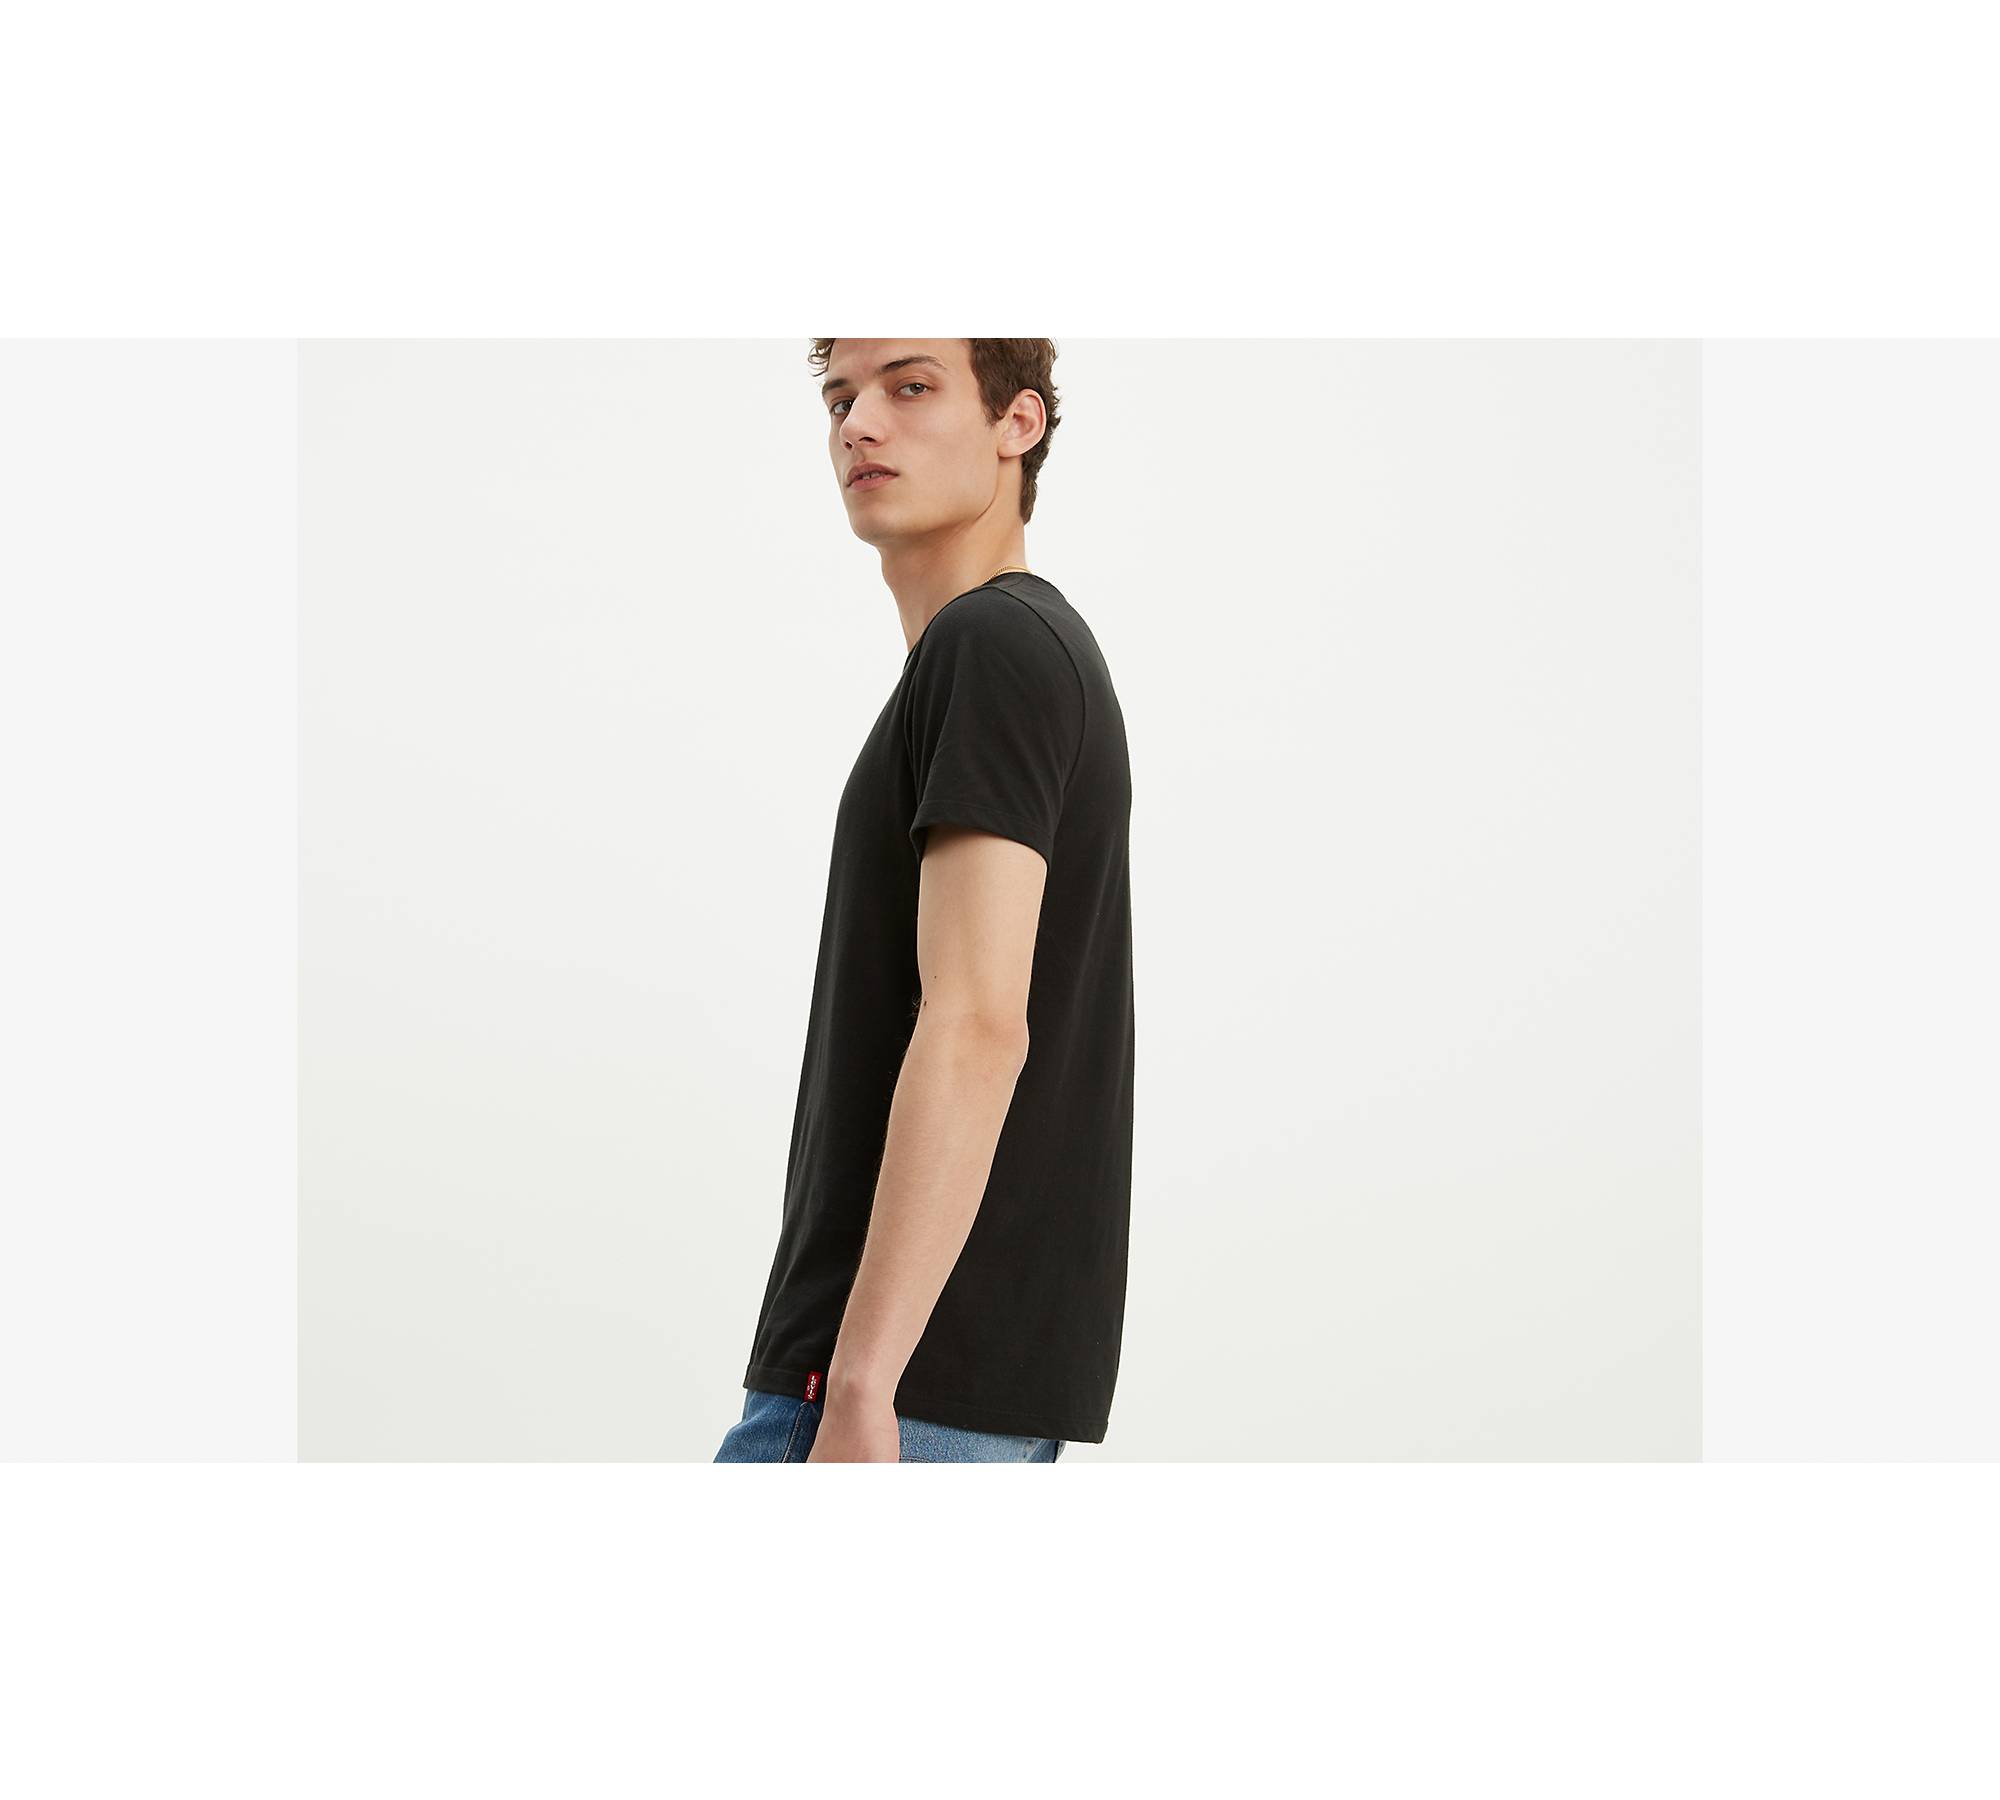 Men's Premium Crew Neck T-Shirts - Black 2 Pack